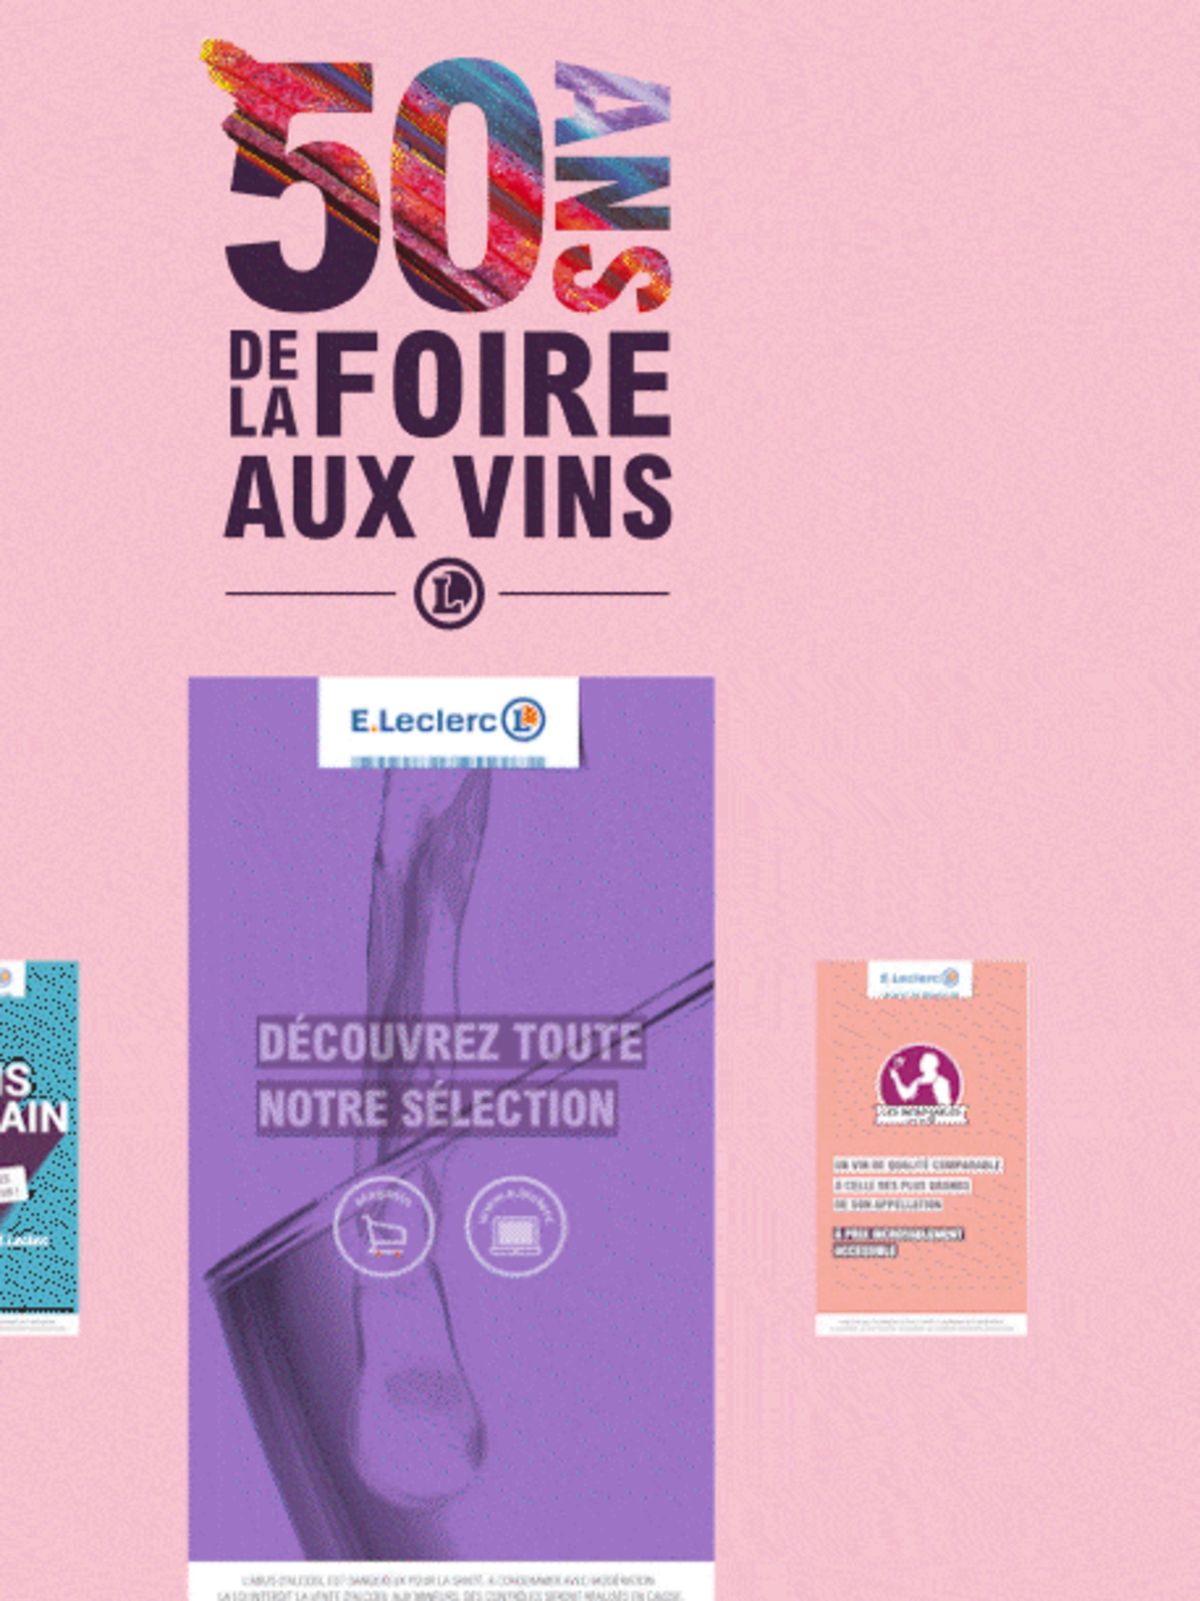 Catalogue Foire Aux Vins - Mixte, page 00444